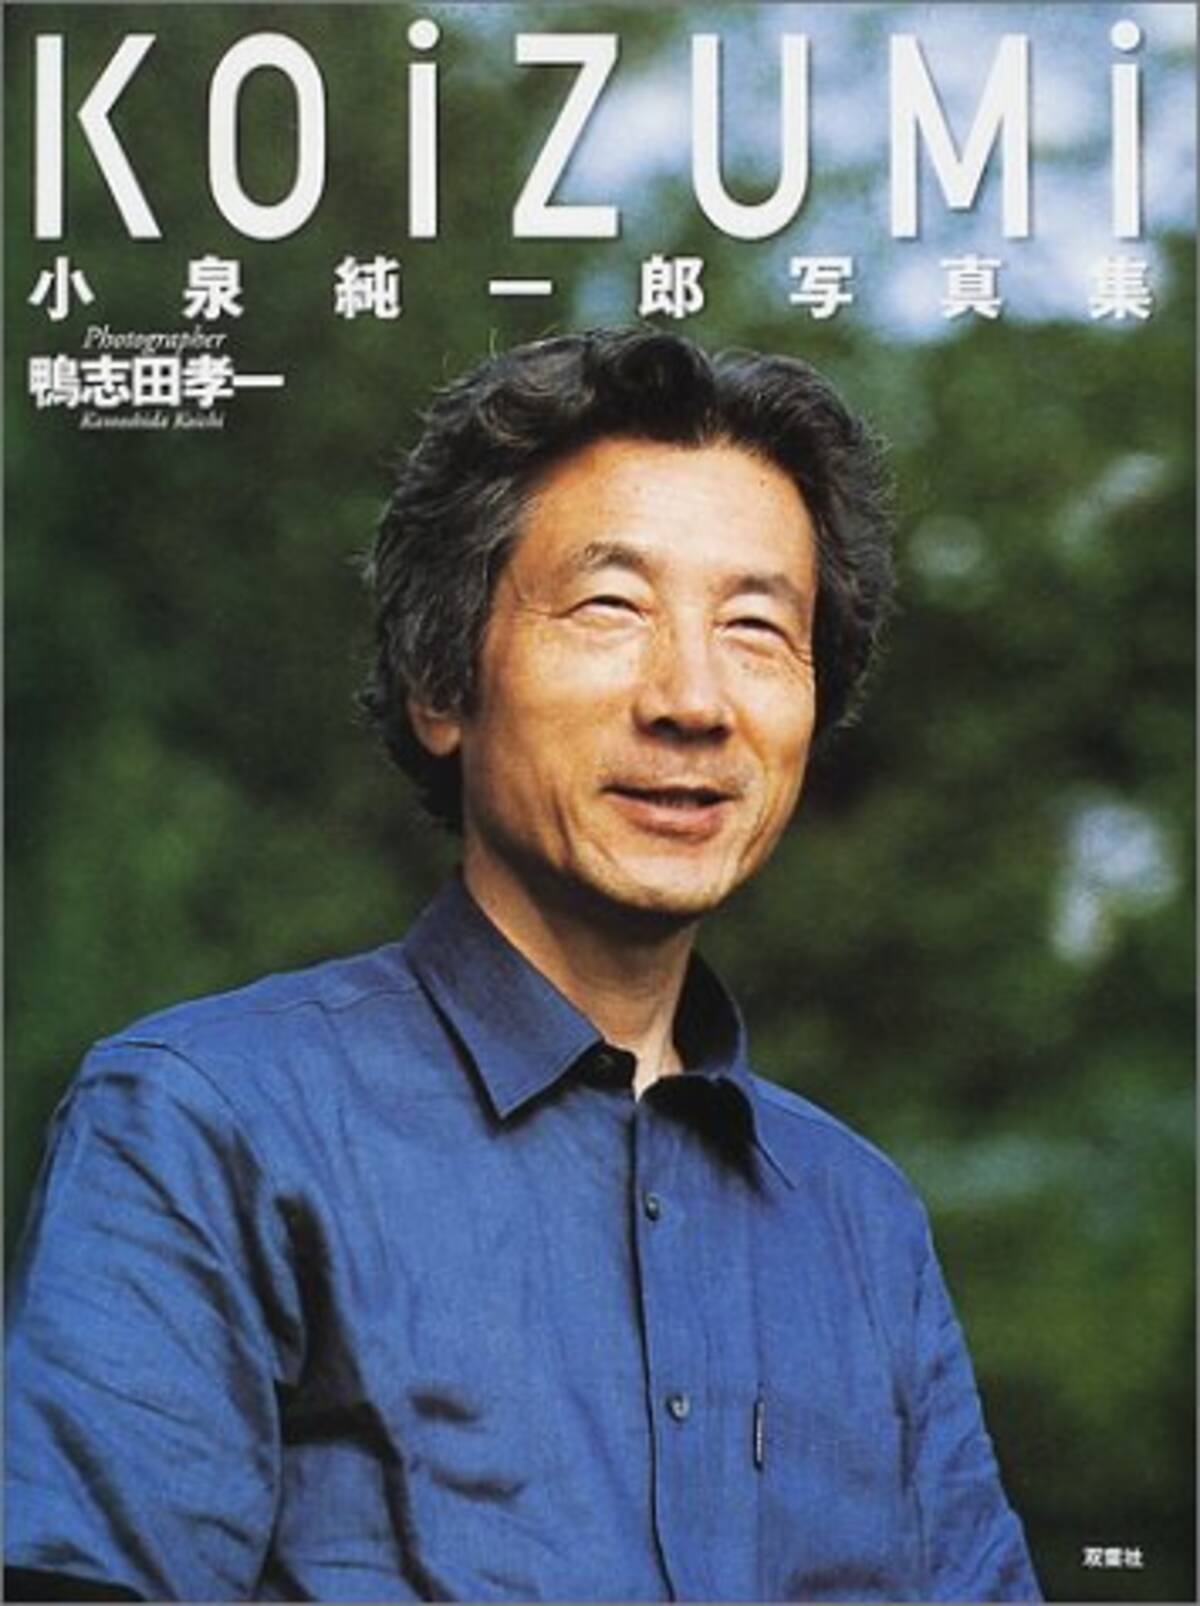 感動した 小泉純一郎元総理の流行語メーカーぶりは凄かった エキサイトニュース